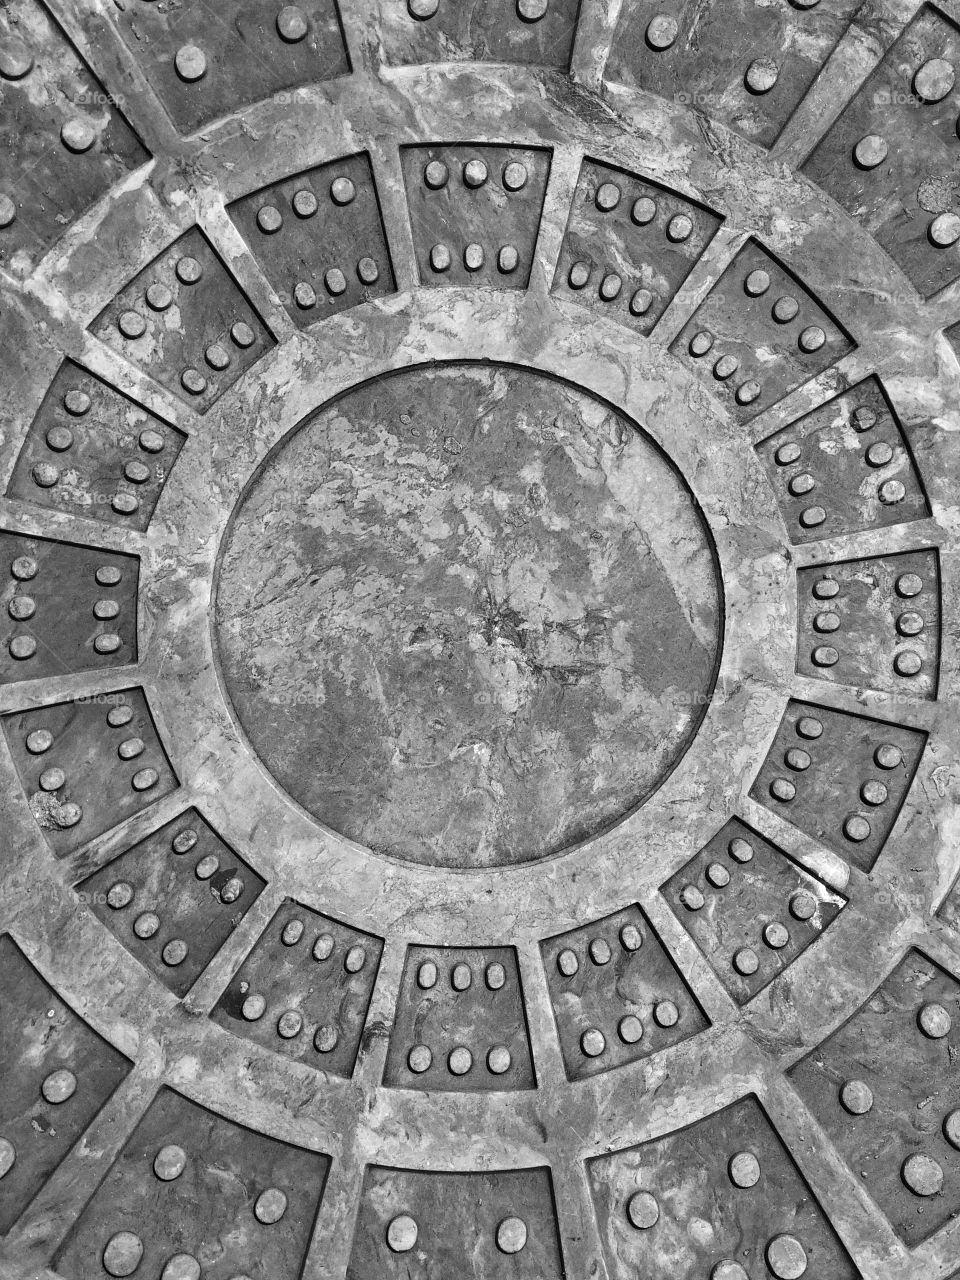 Manhole cover closeup 